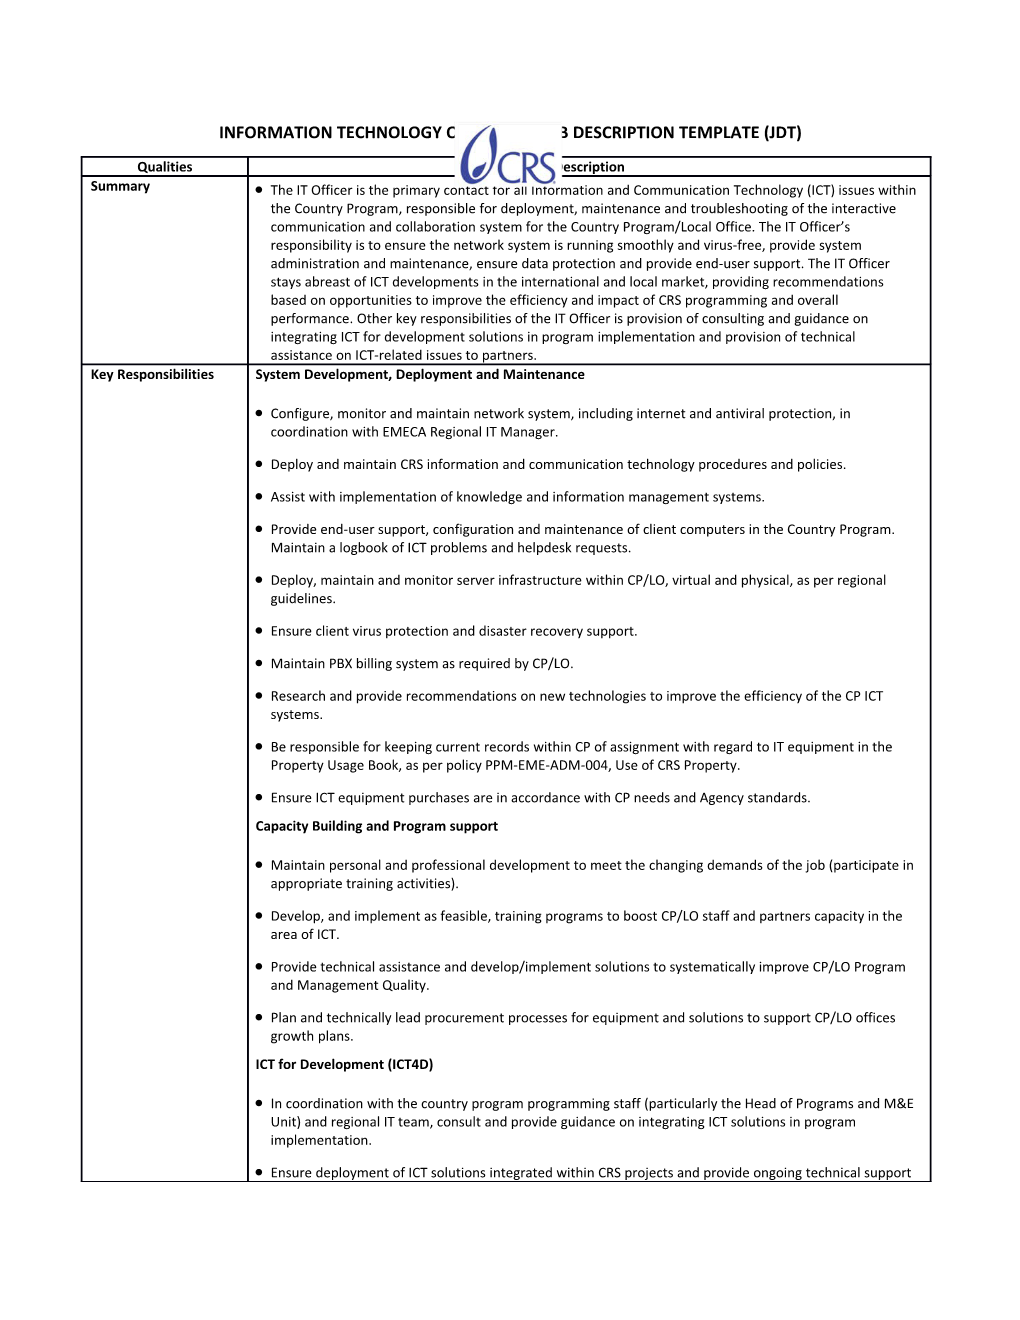 Information Technology Officer1 Job Description Template (Jdt)